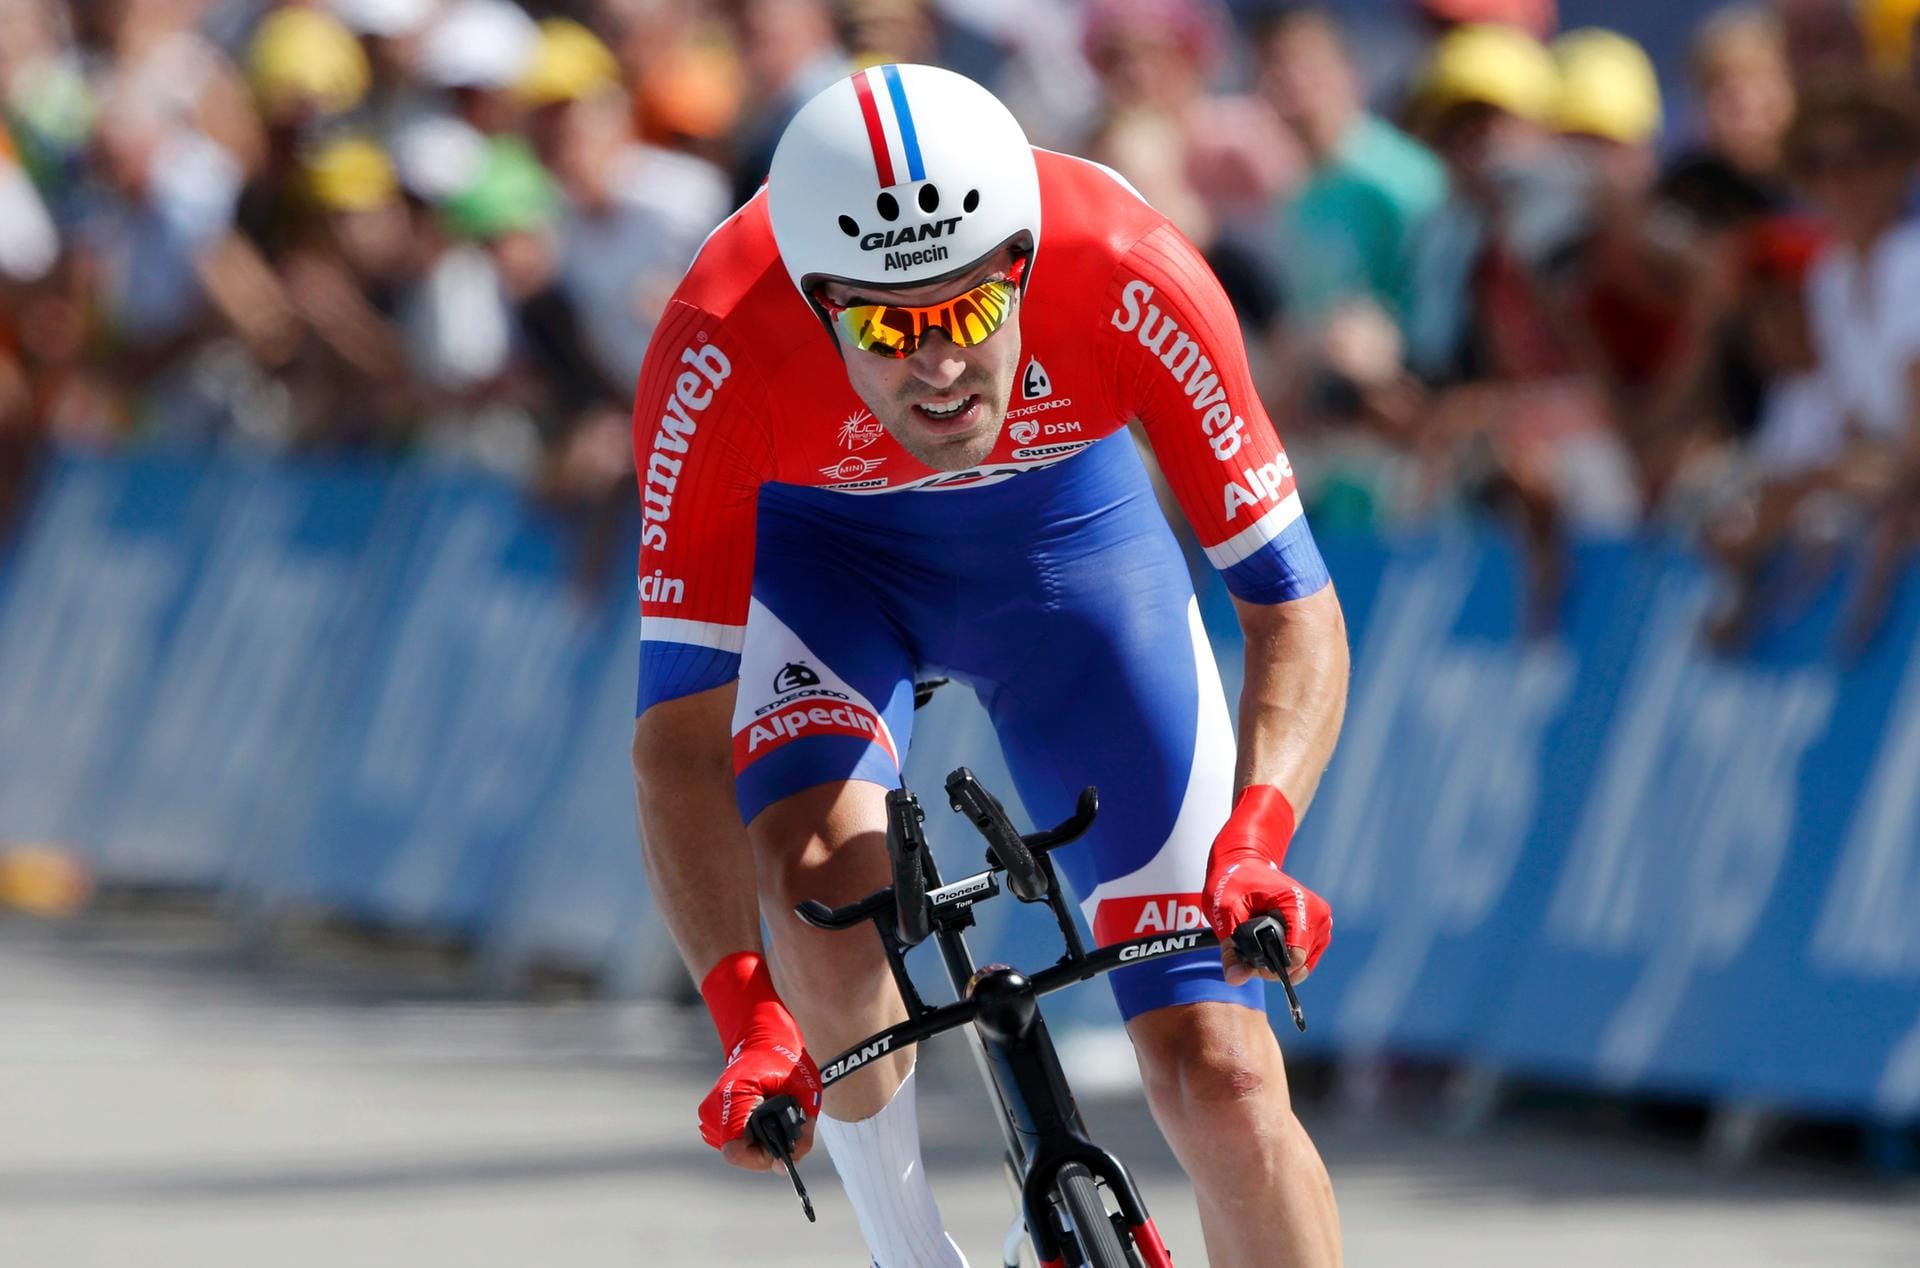 Fliegender Holländer: Tom Dumoulin legte wie schon im ersten Tour-Zeitfahren die Bestzeit vor. Ob der Niederländer auch diesmal gewann?